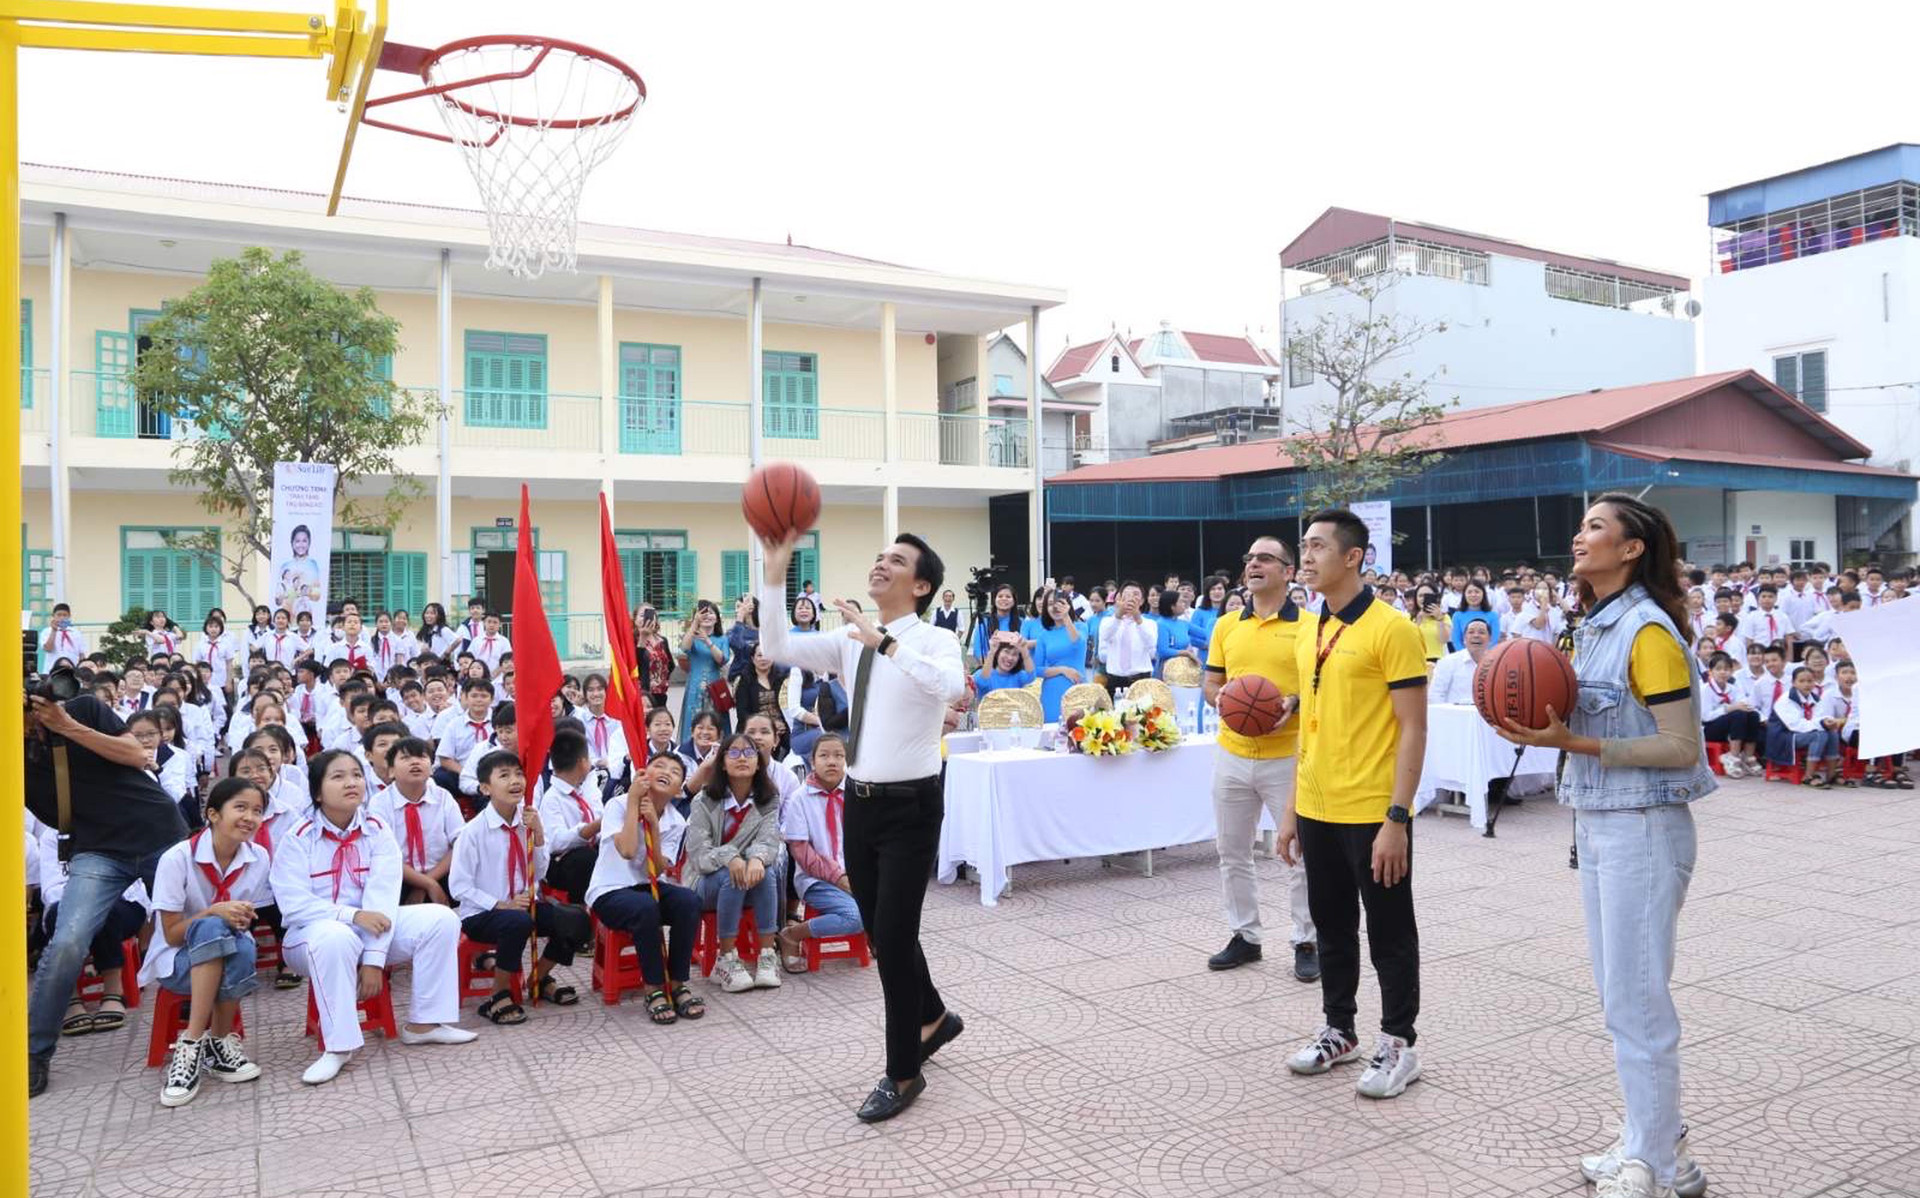 Sun Life tặng 102 trụ bóng rổ và 510 quả bóng cho 51 trường học